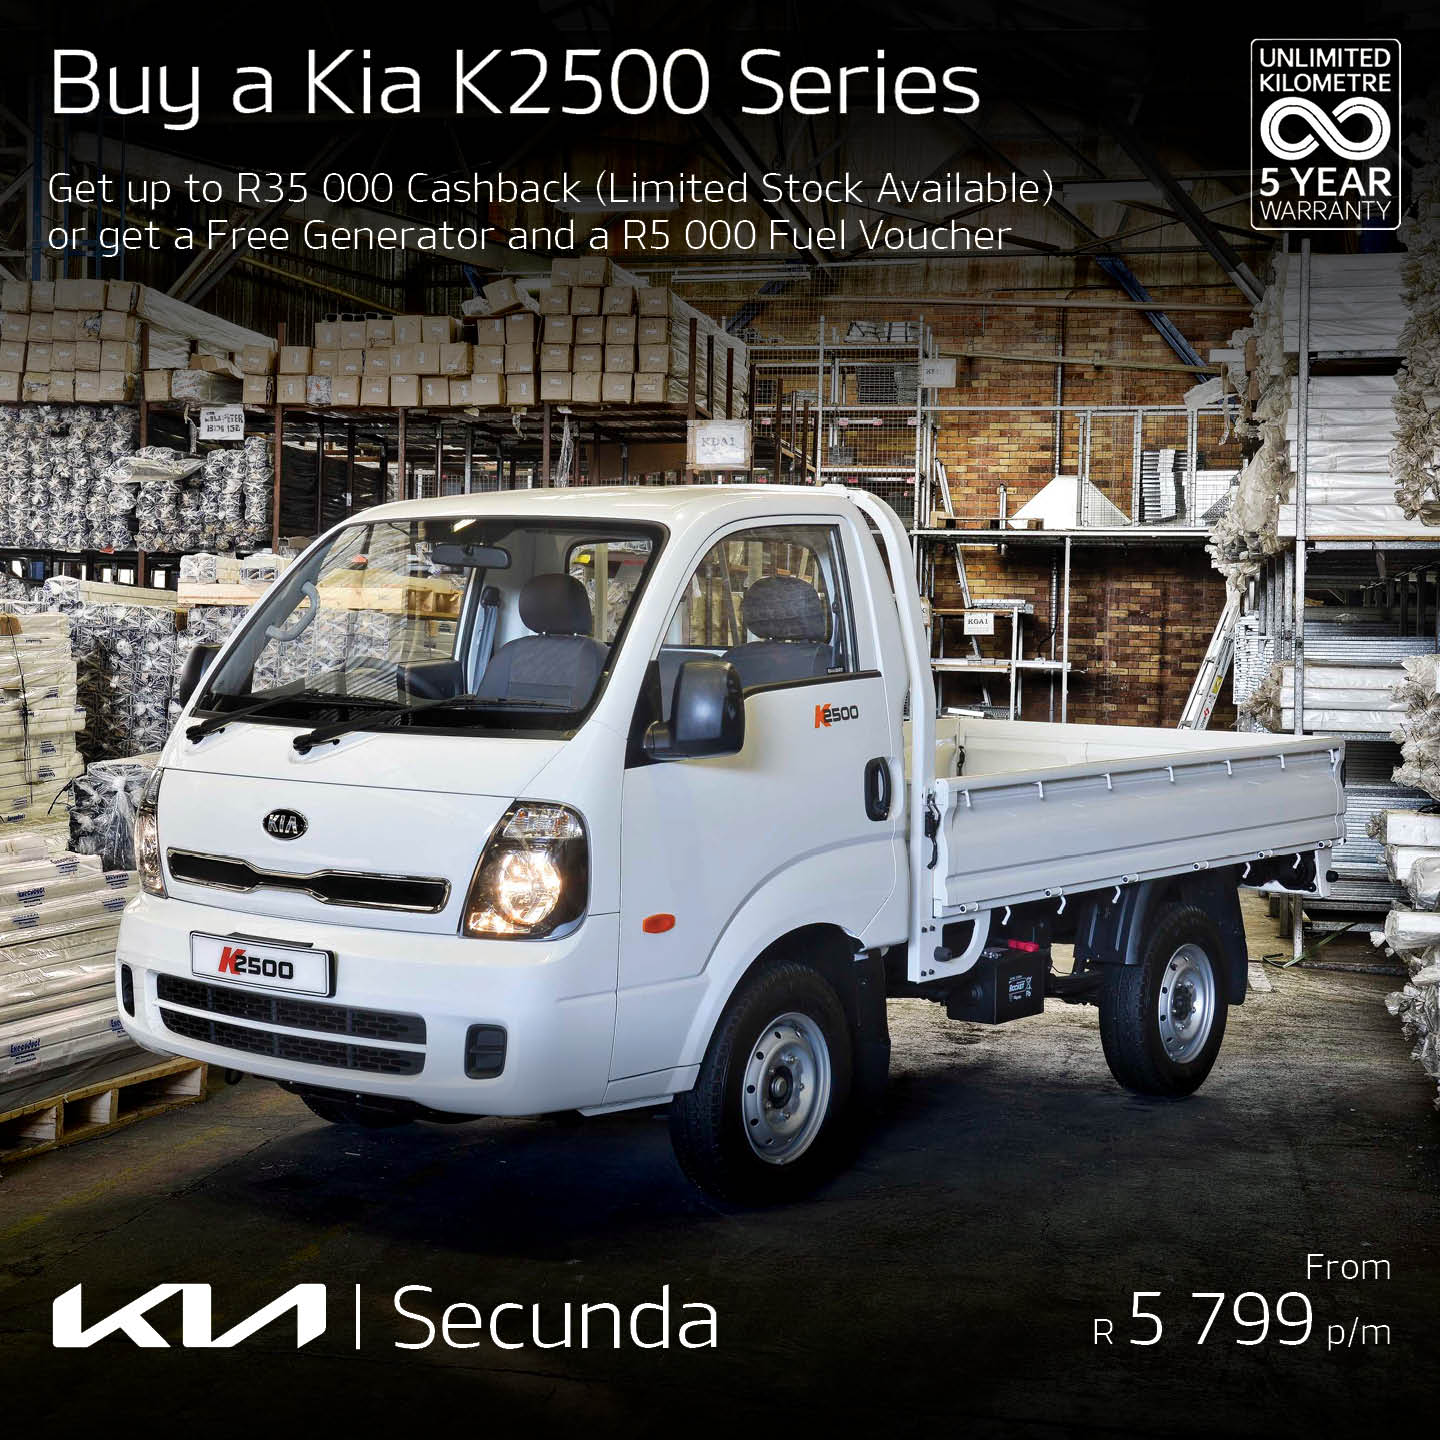 Buy a KIA K2500 Series image from Eastvaal Motors